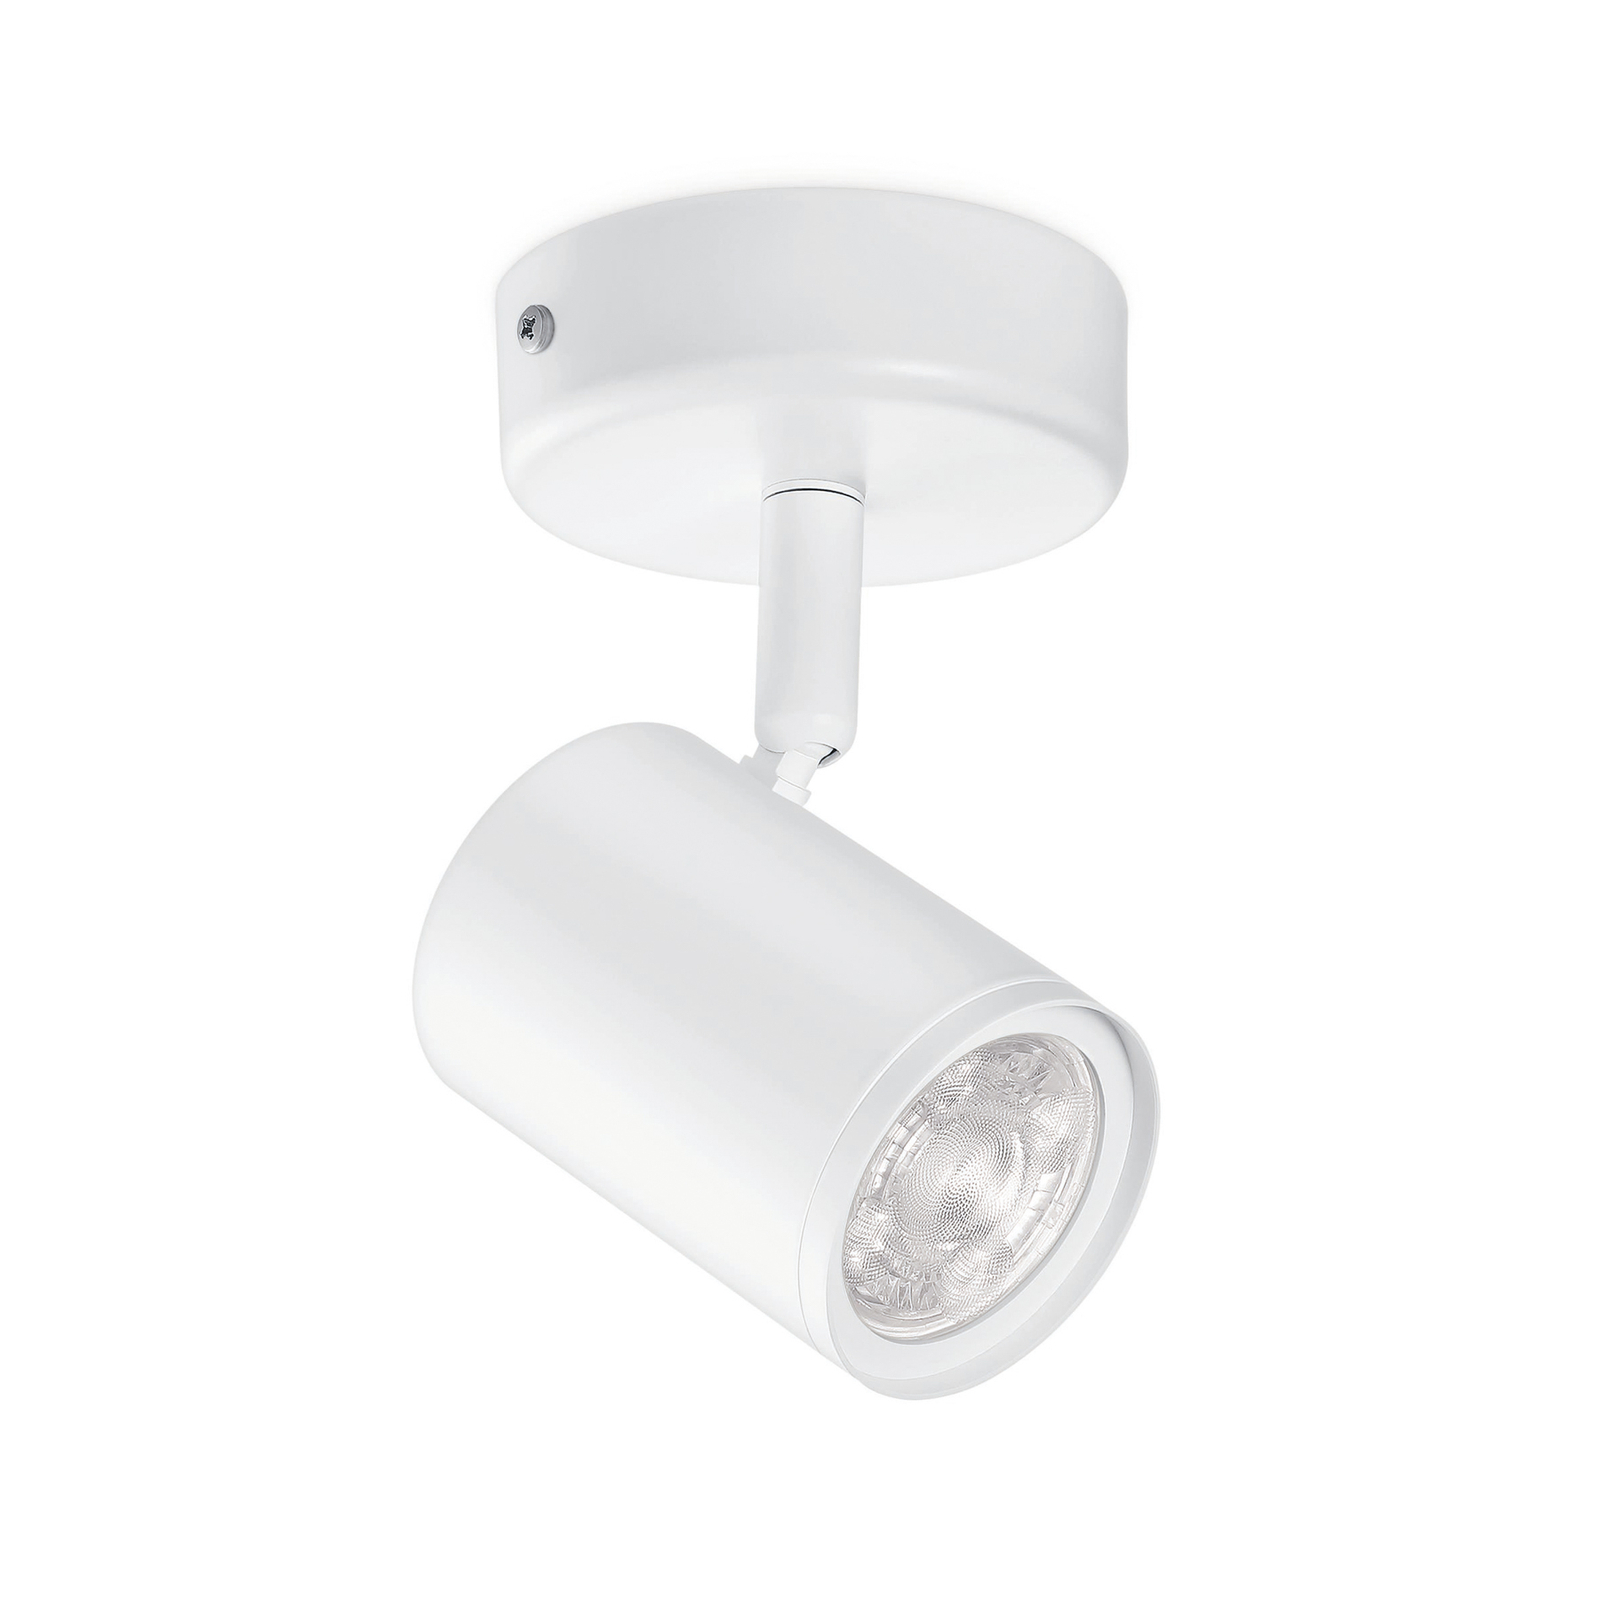 WiZ Imageo LED spot 1-bulb 2,700-6,500 K, white